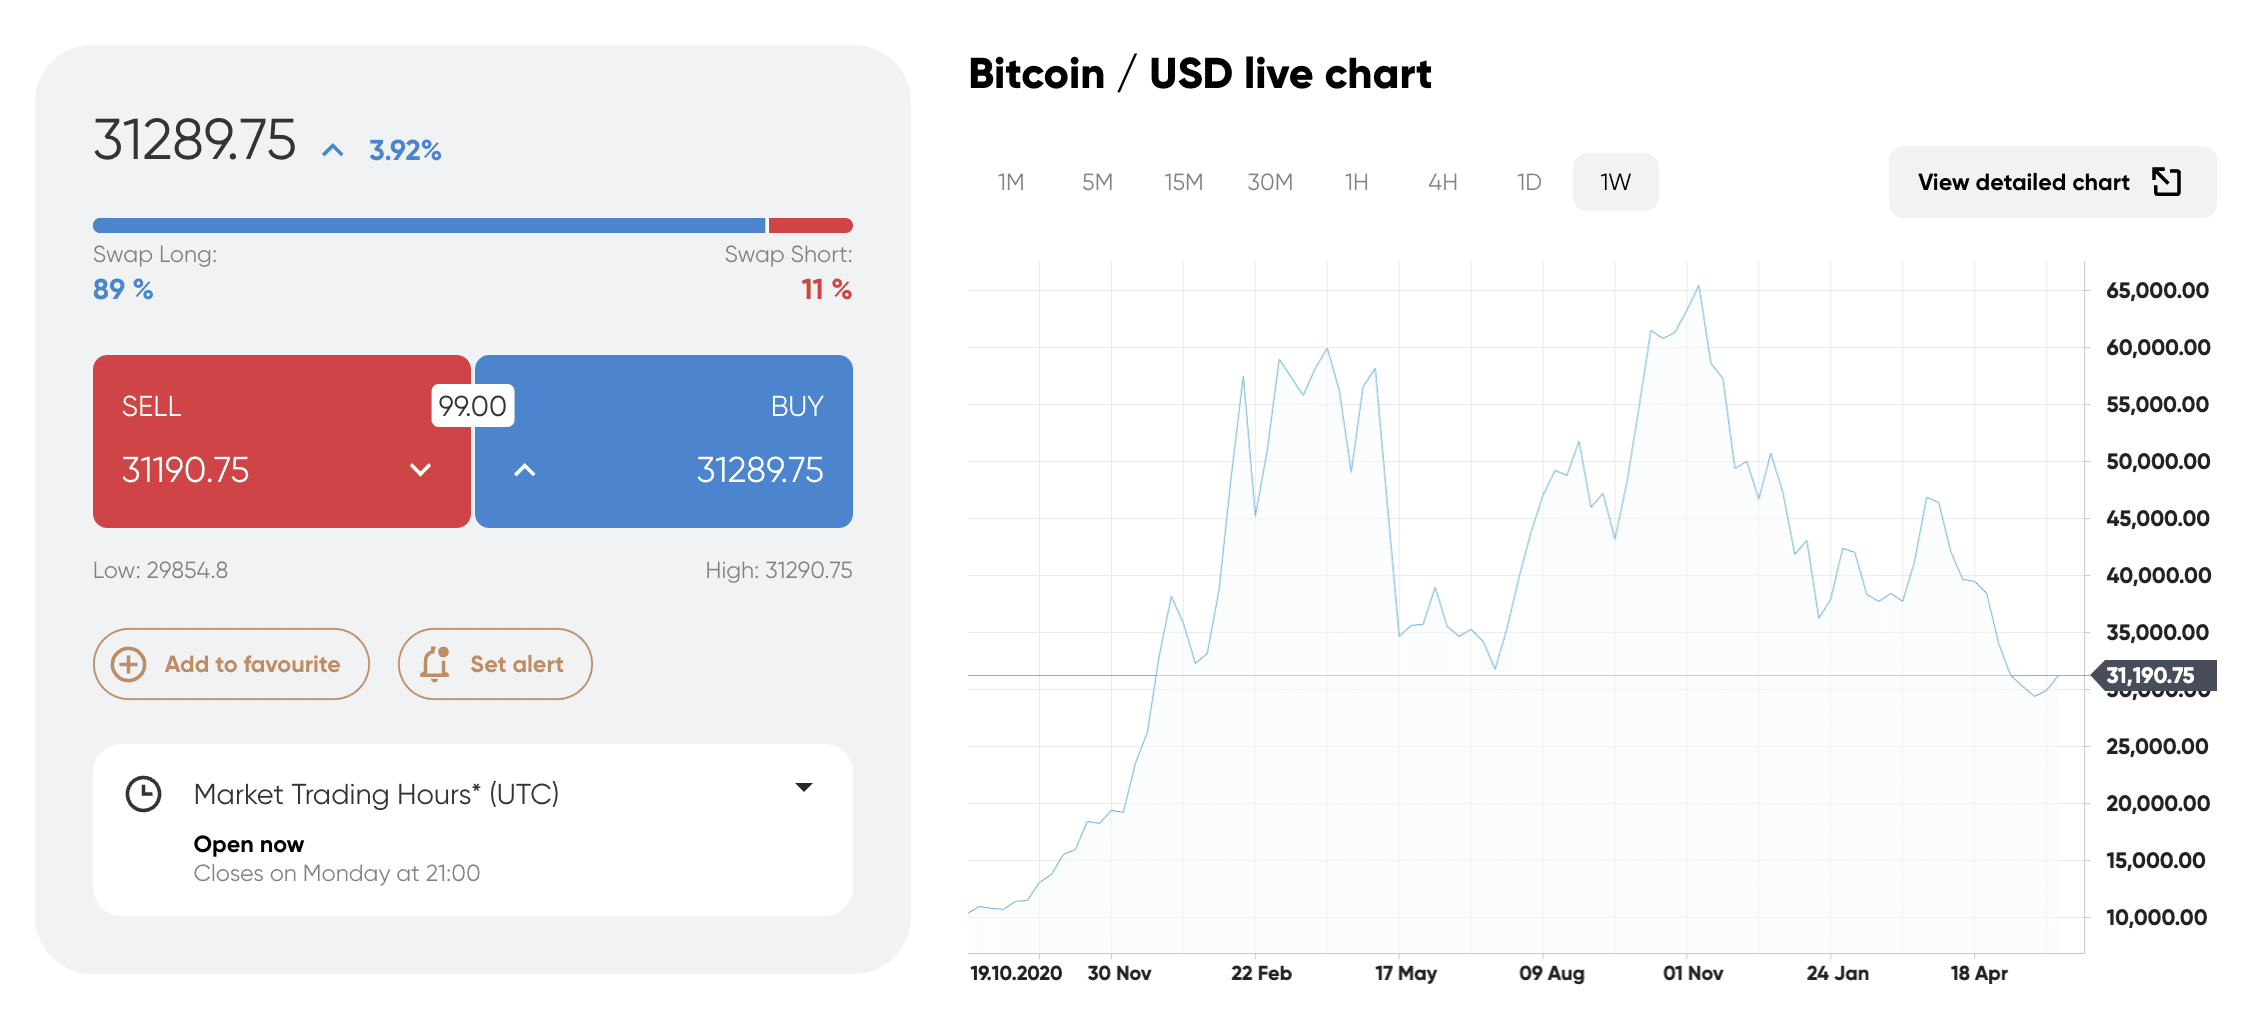 should i buy bitcoin?